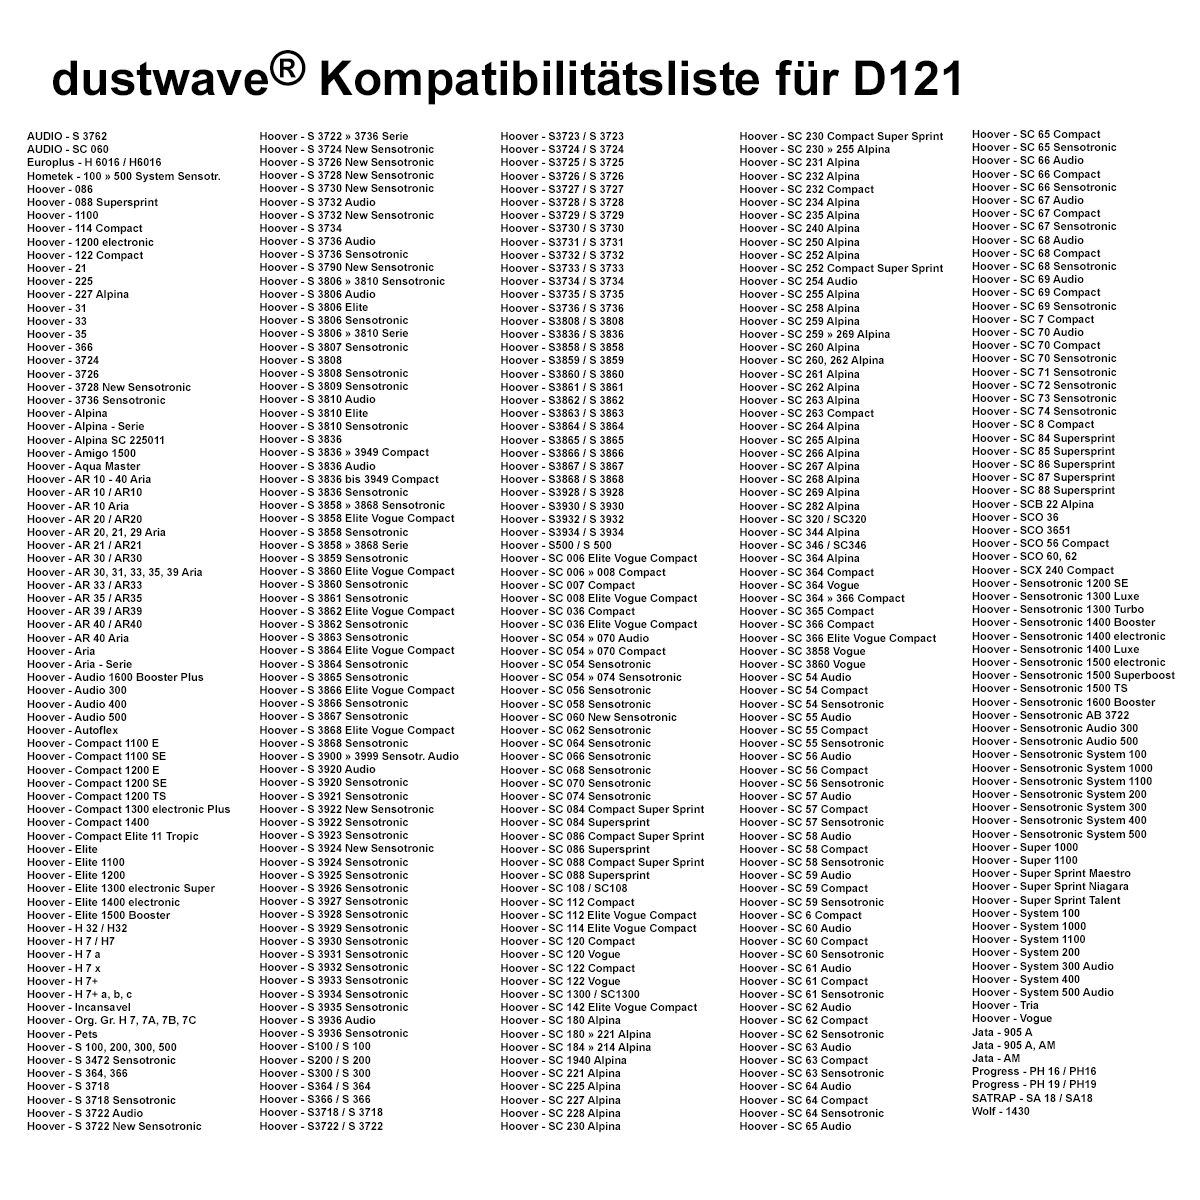 Dustwave® 10 Staubsaugerbeutel für Hoover Elite 1400 electronic - hocheffizient, mehrlagiges Mikrovlies mit Hygieneverschluss - Made in Germany